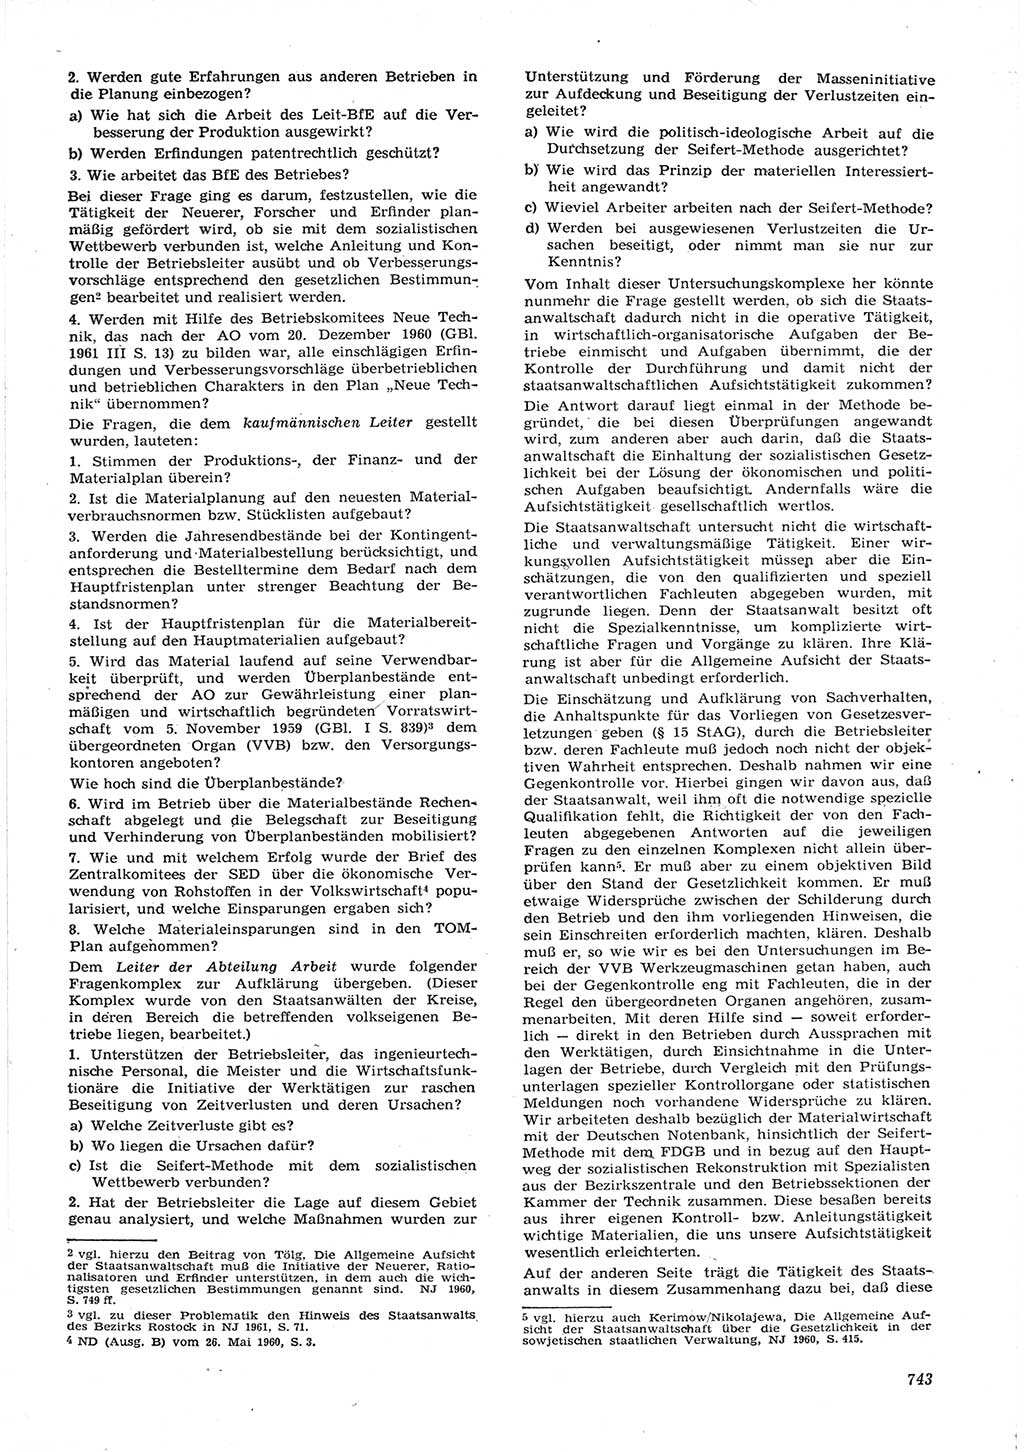 Neue Justiz (NJ), Zeitschrift für Recht und Rechtswissenschaft [Deutsche Demokratische Republik (DDR)], 15. Jahrgang 1961, Seite 743 (NJ DDR 1961, S. 743)